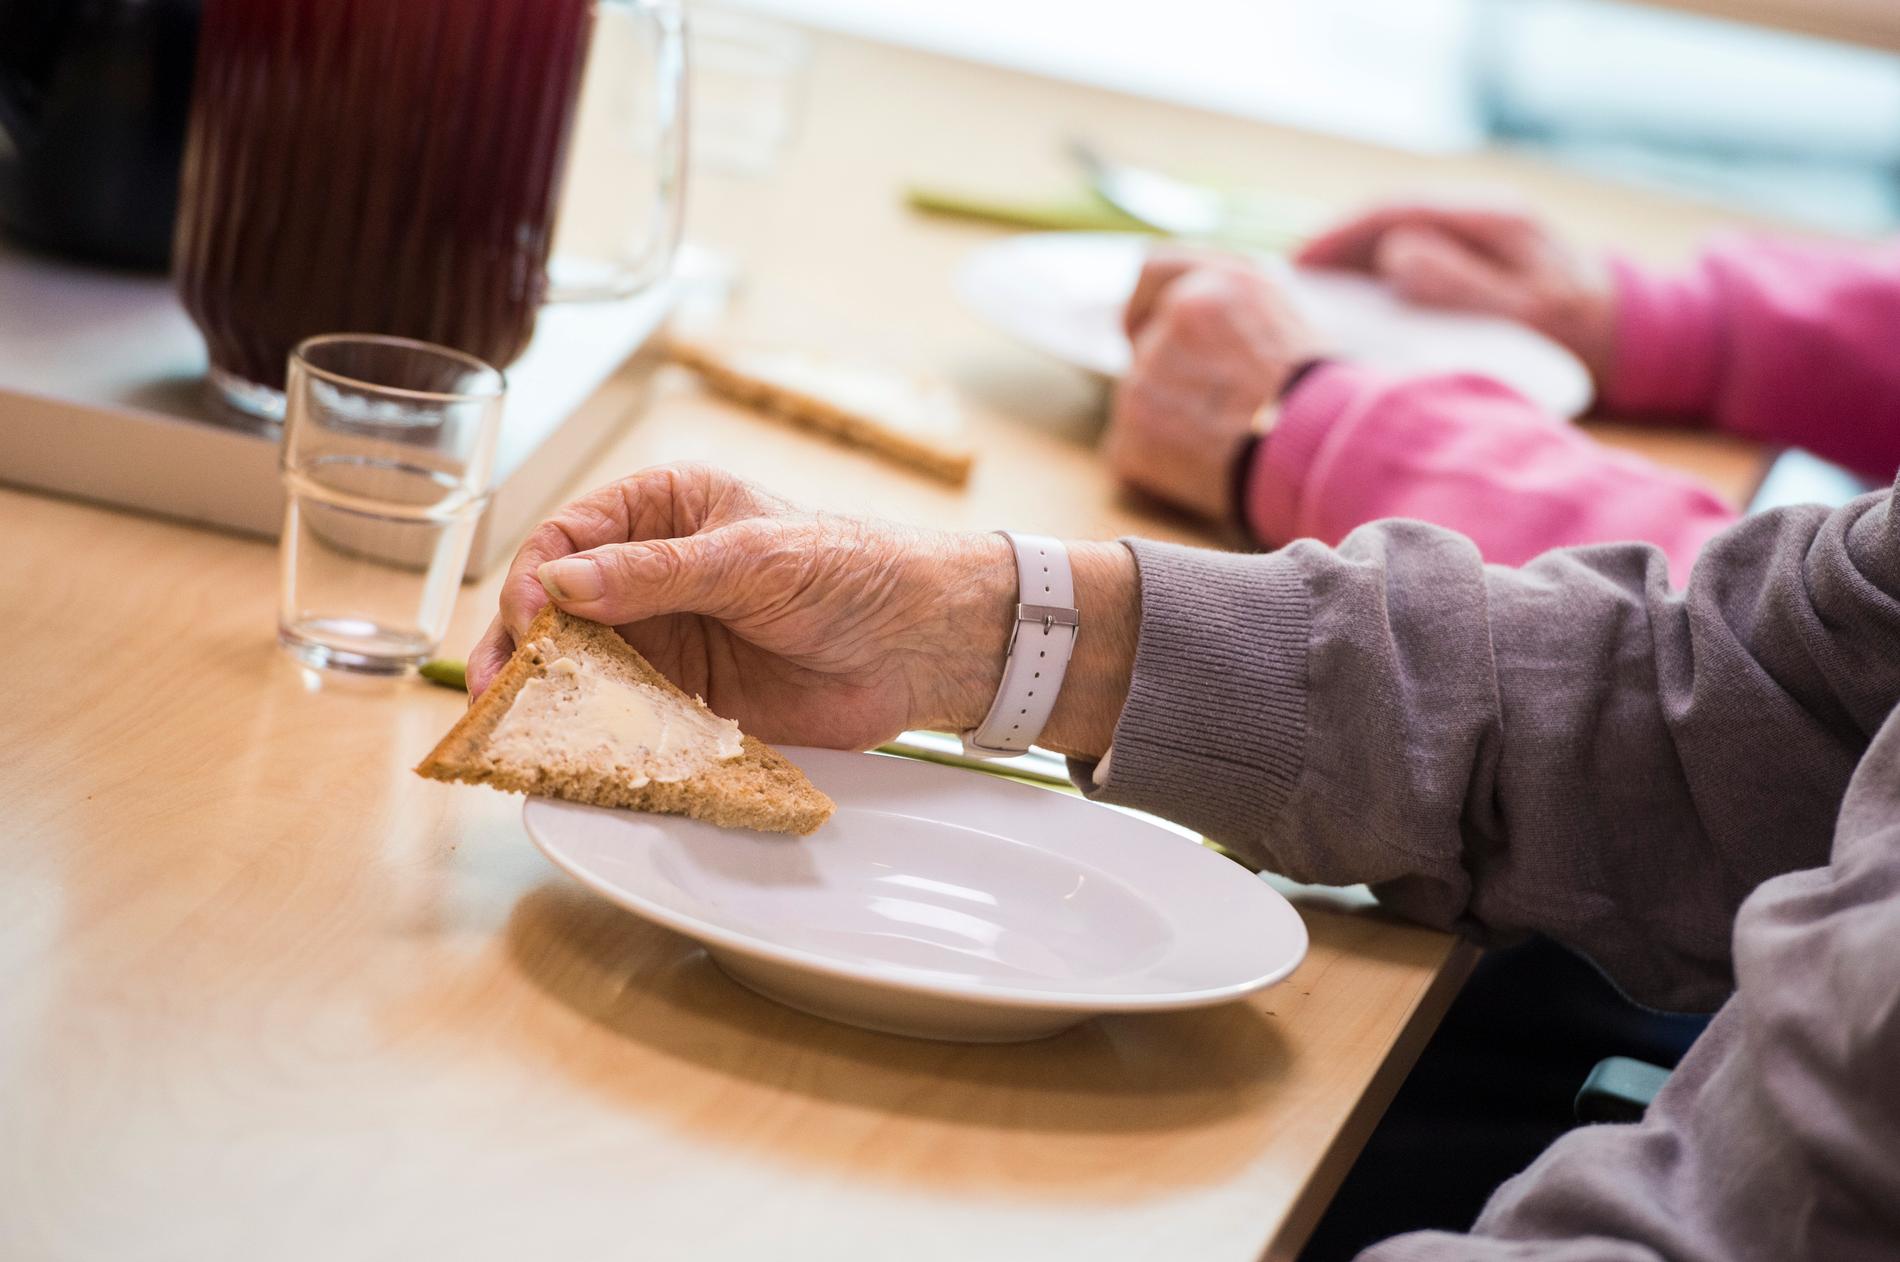 Risken för att skada sig ökar i samband med att många äldre får minskad aptit med åren. Men bra kost kan förebygga fallolyckor. Arkivbild.